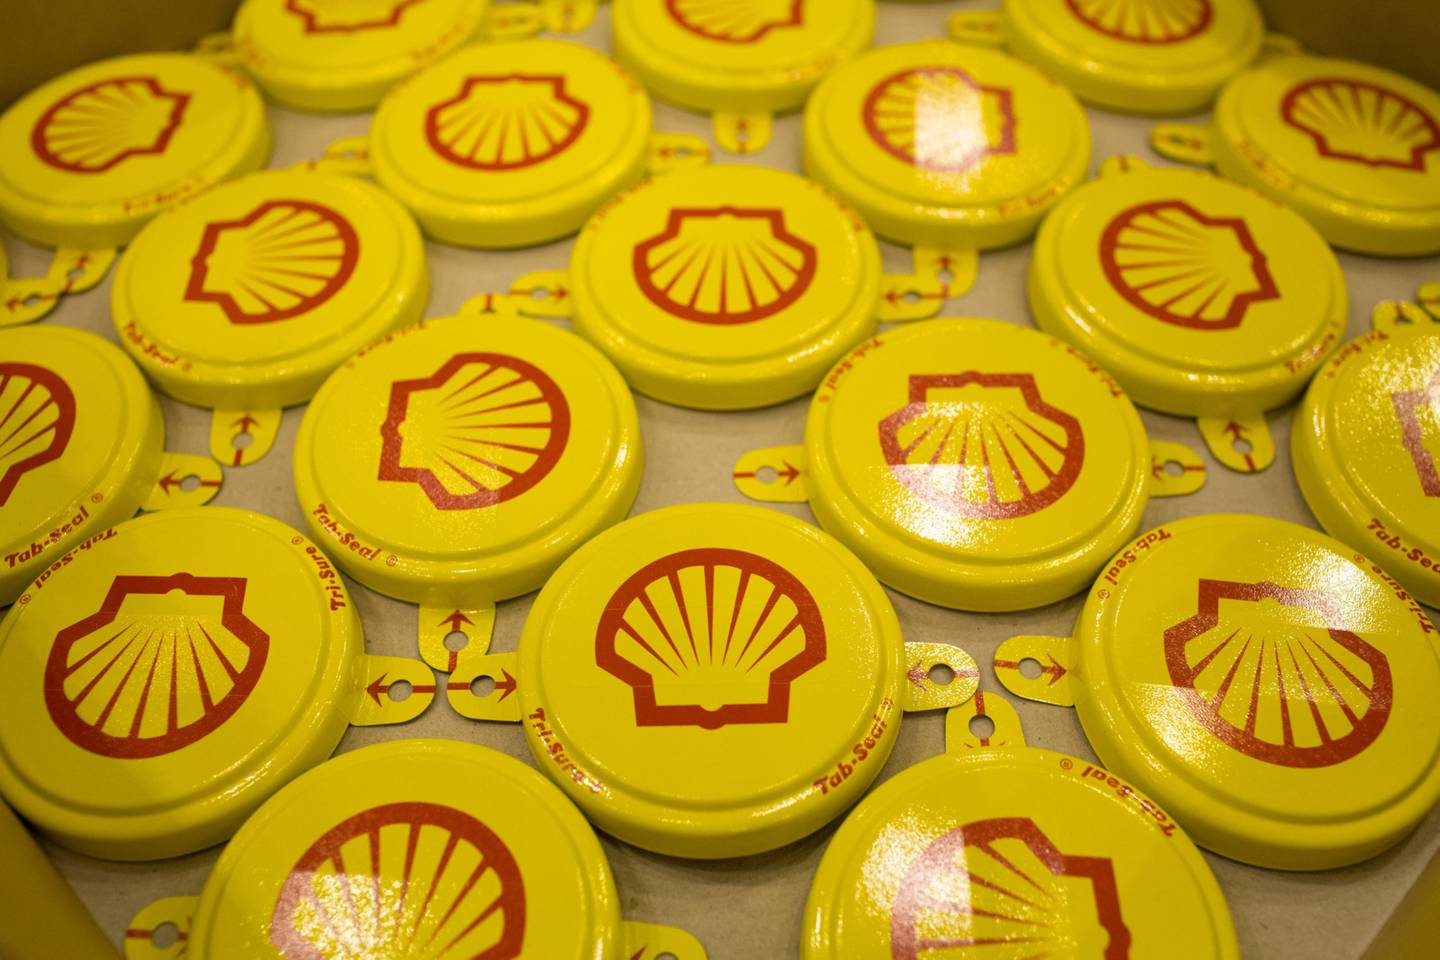 Shell, así como sus rivales, incluida ExxonMobil Corp., sorprendió a la industria energética al anunciar sus planes de abandonar activos rusos valorados en millones de dólares después de que estallara la guerra en Ucrania en febrero